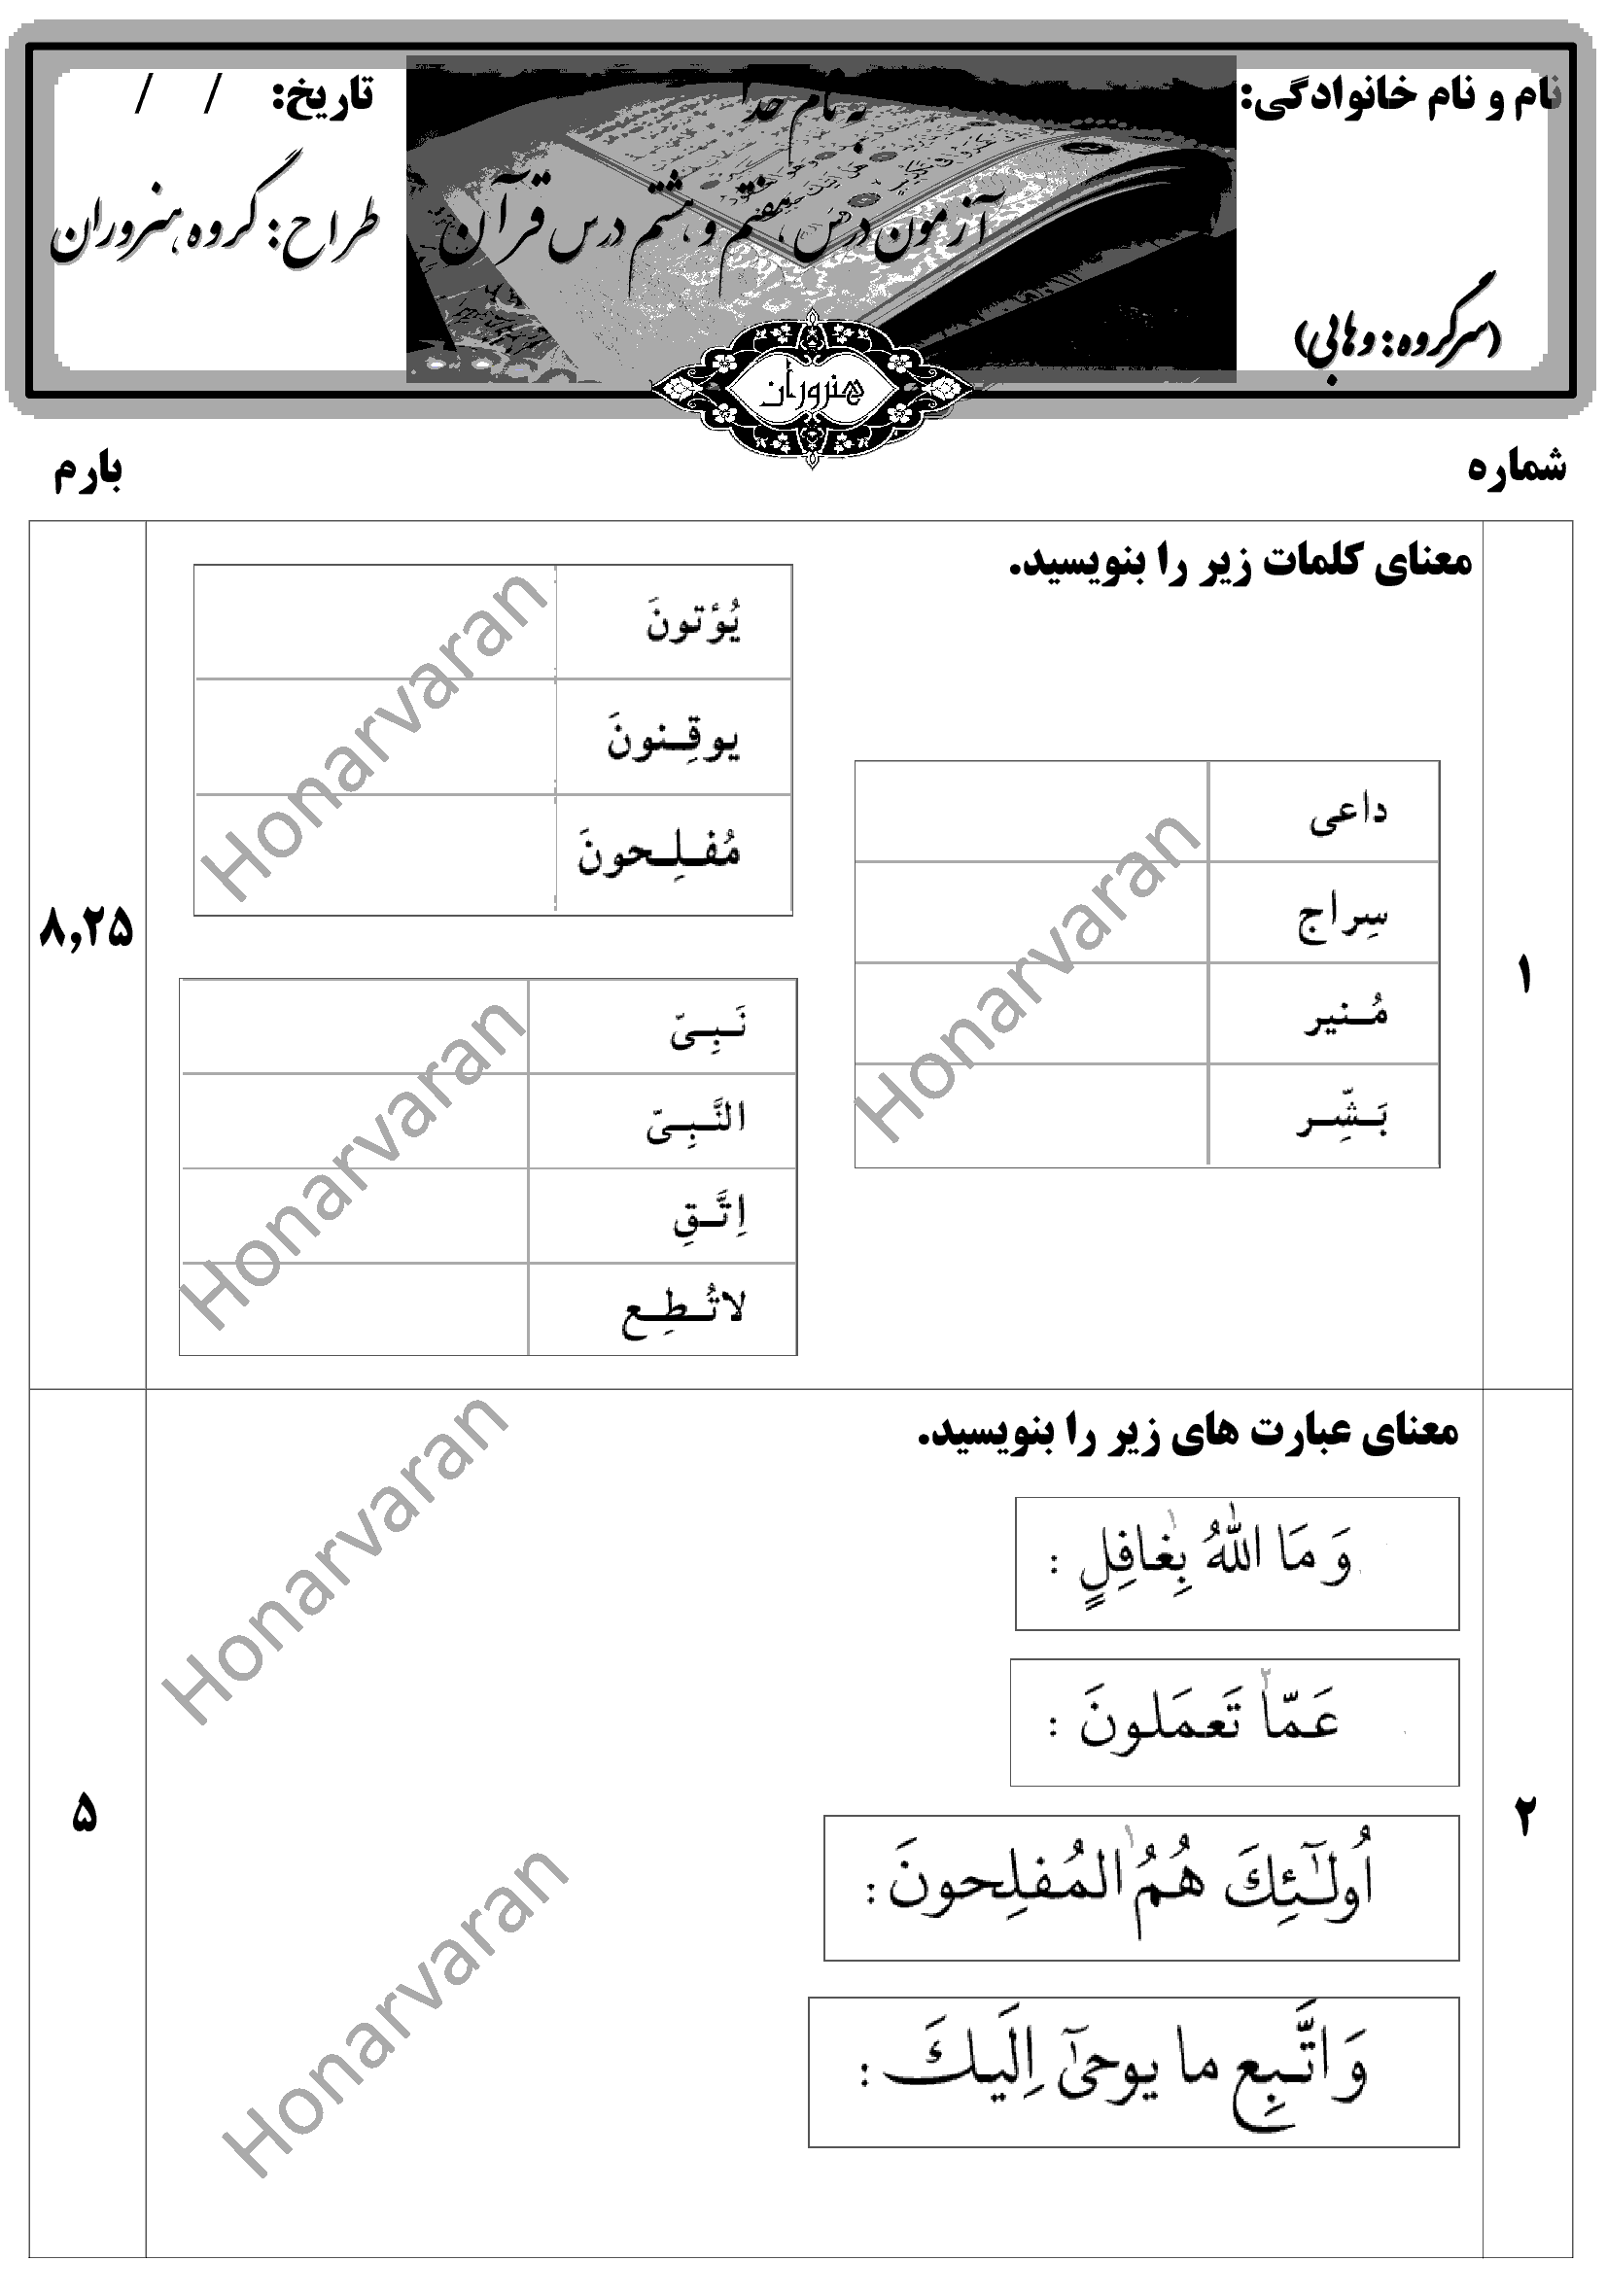  ارزشیابی مستمر آموزش قرآن هشتم |  درس 7 و 8